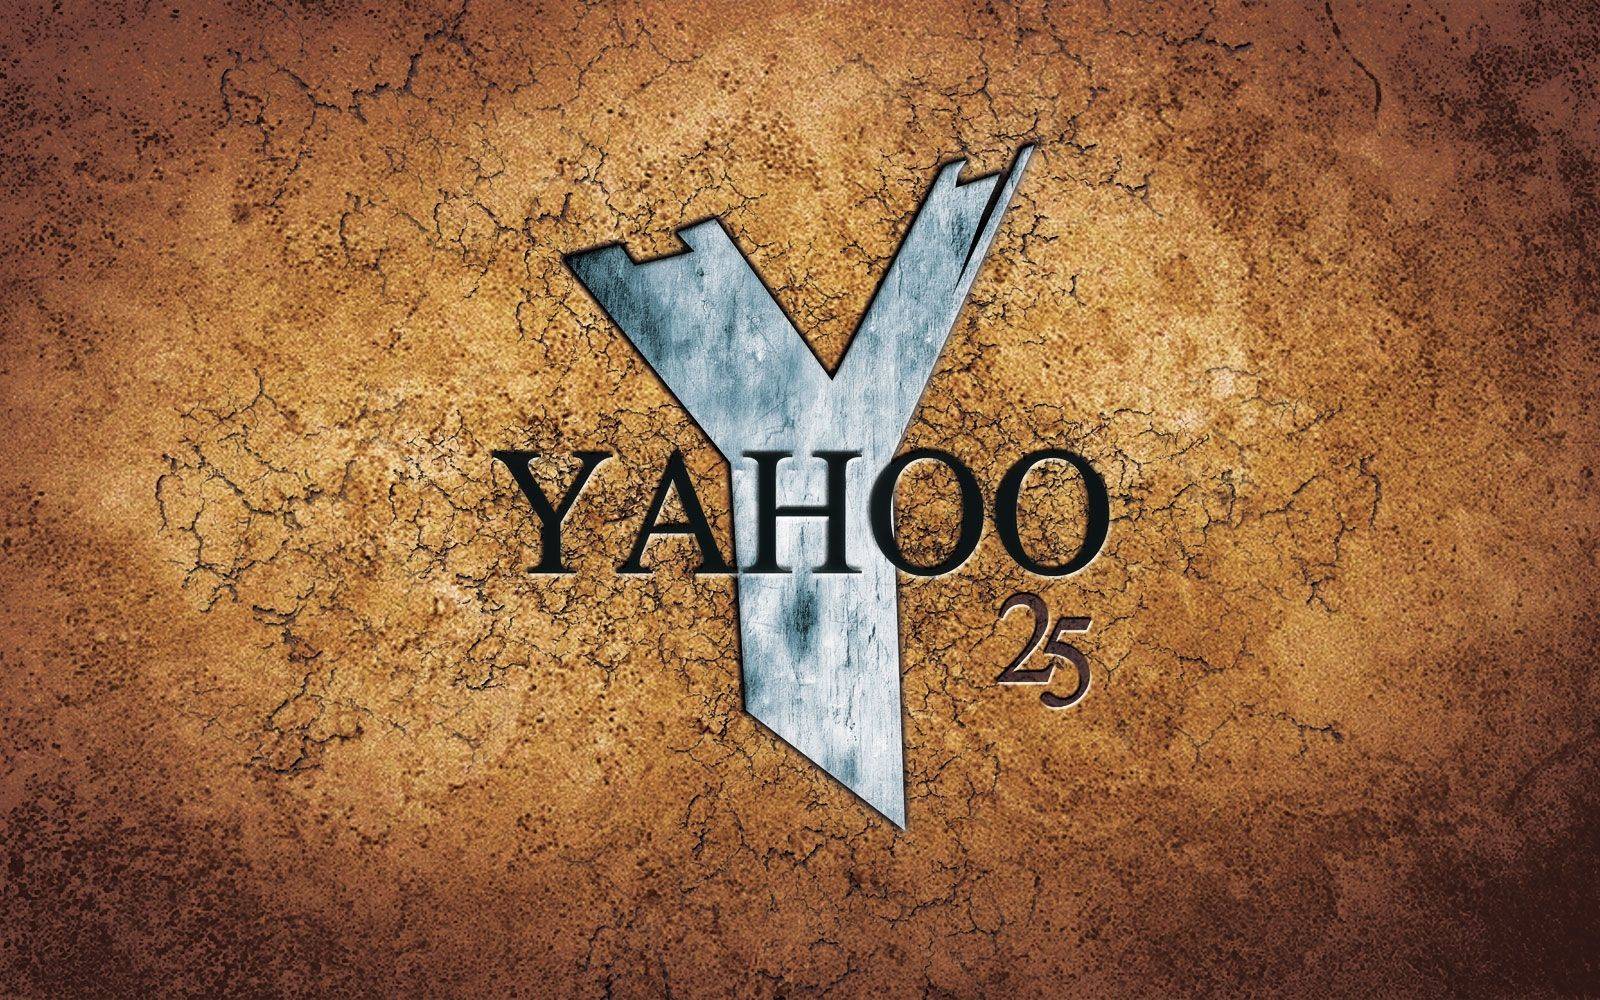 Yahoo 25